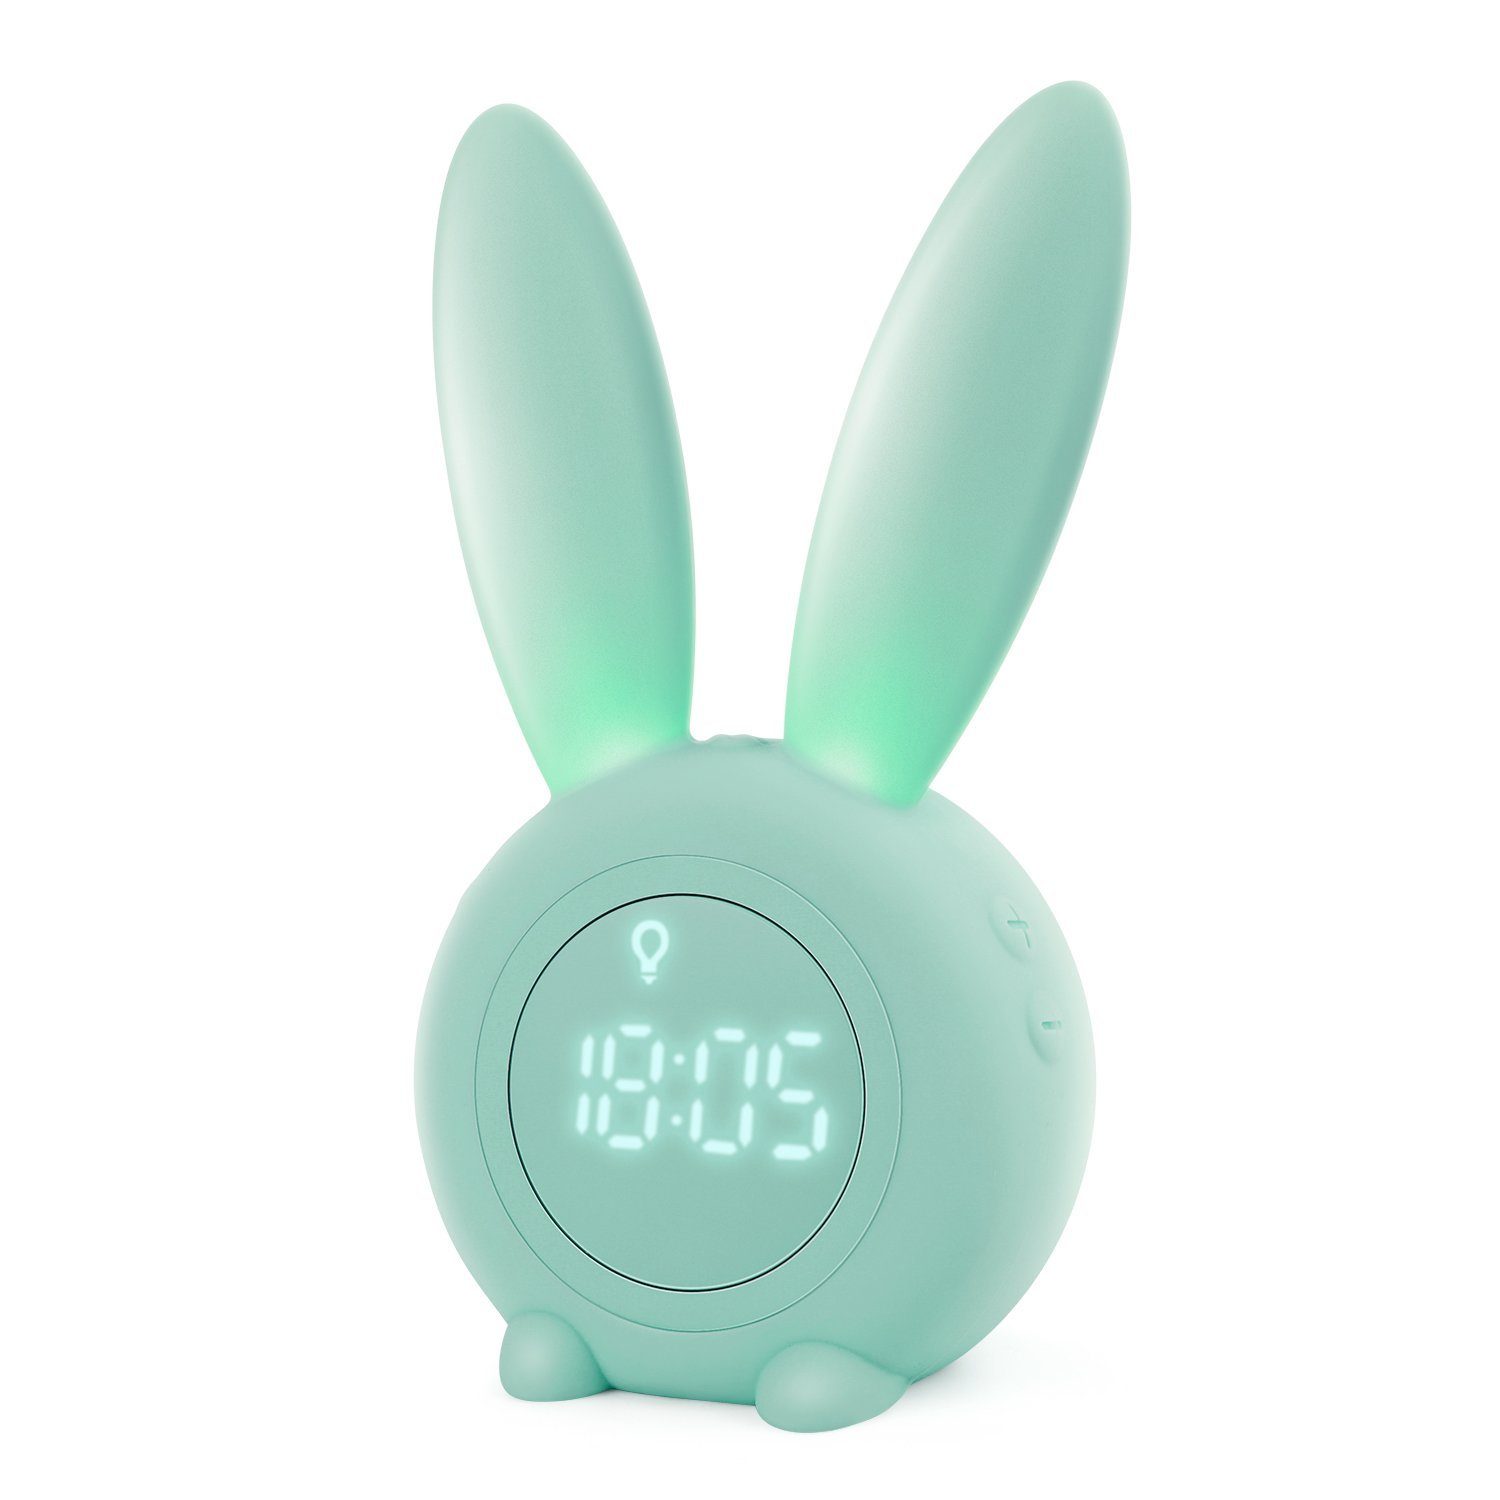 EXTSUD Wecker Kinder Lichtwecker Cute Rabbit Kinderwecker Creative Nachttischlampe Snooze-Funktion zeitgesteuertes Nachtlicht Grün